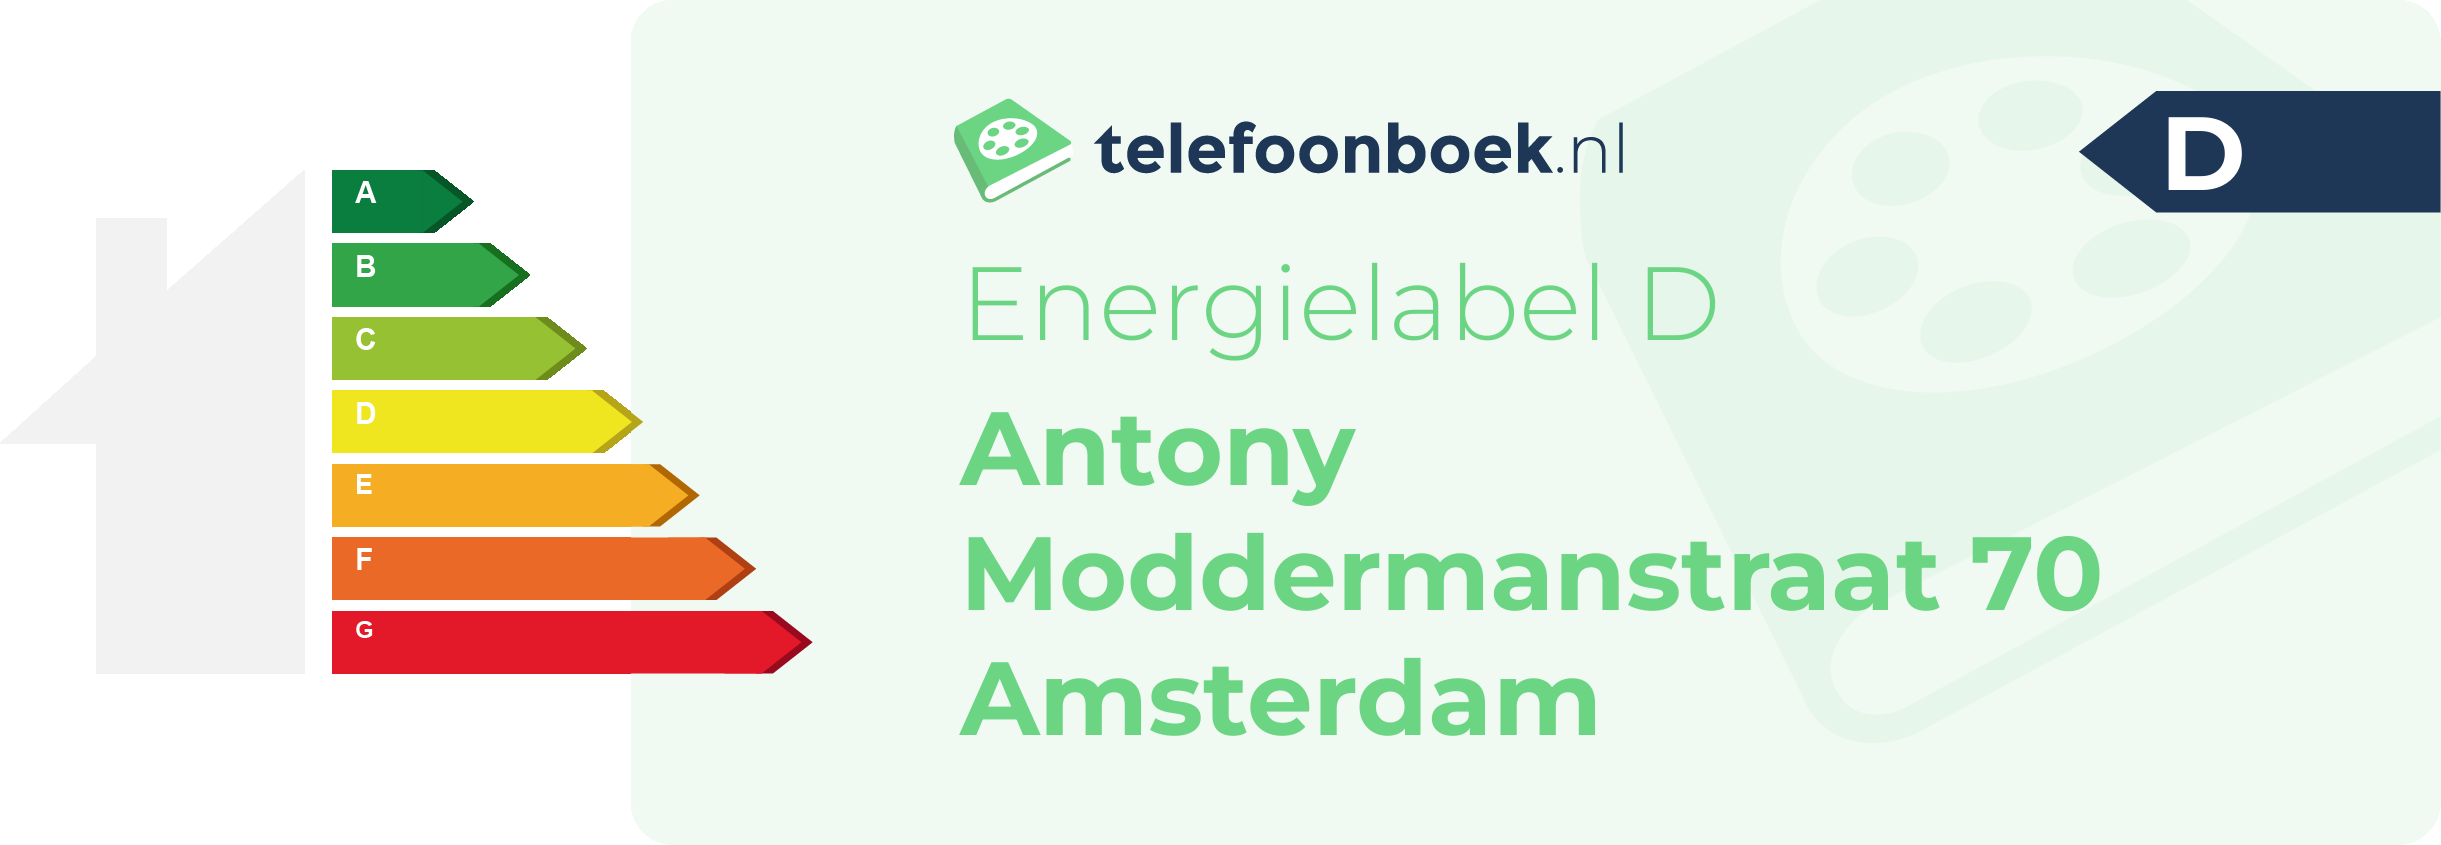 Energielabel Antony Moddermanstraat 70 Amsterdam